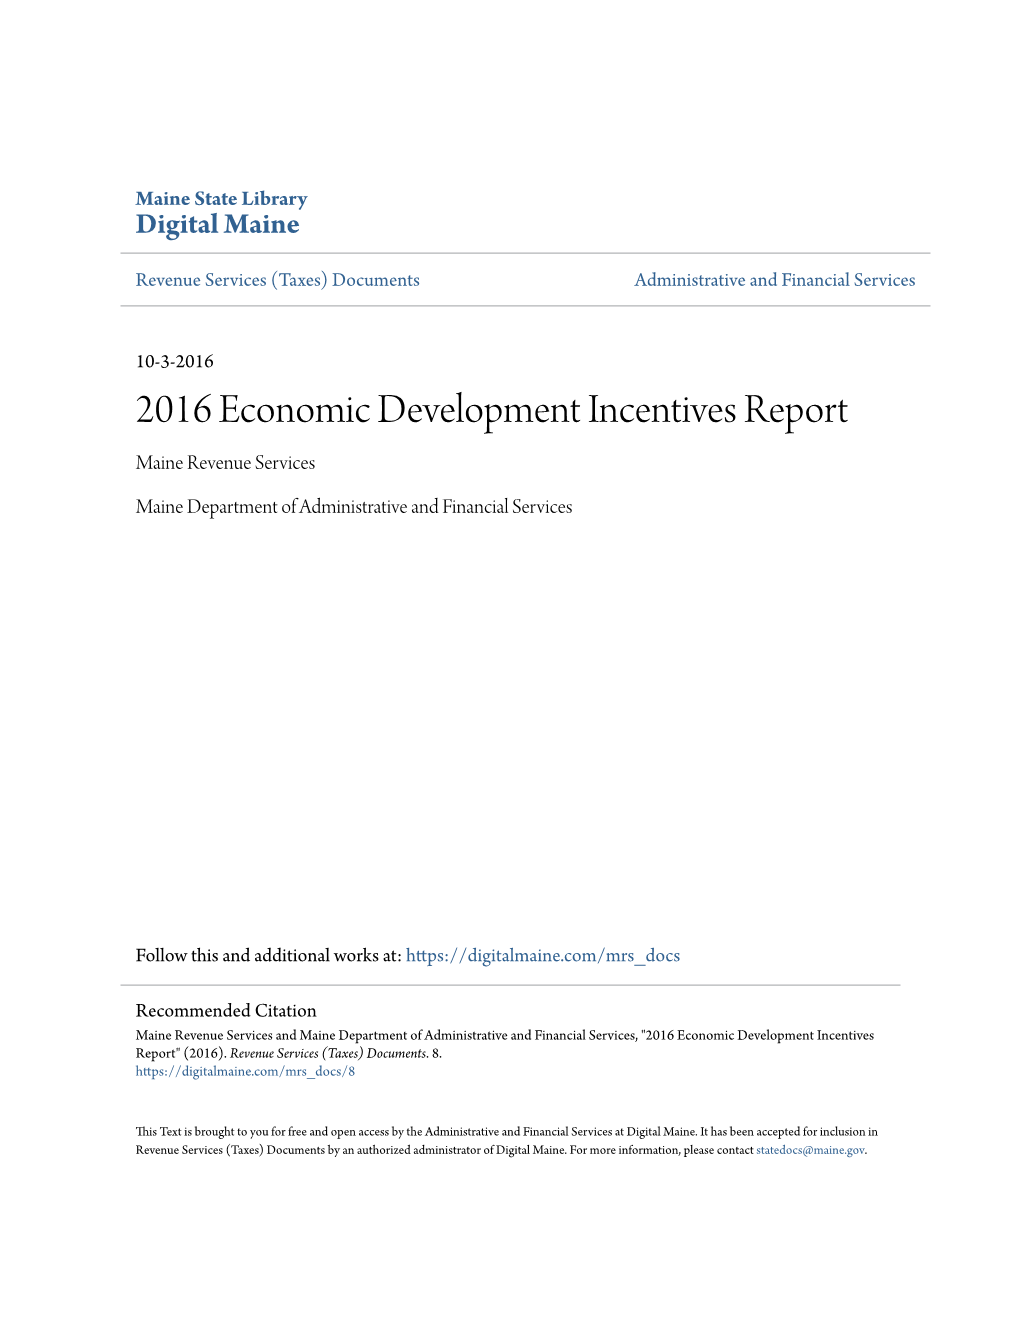 2016 Economic Development Incentives Report Maine Revenue Services